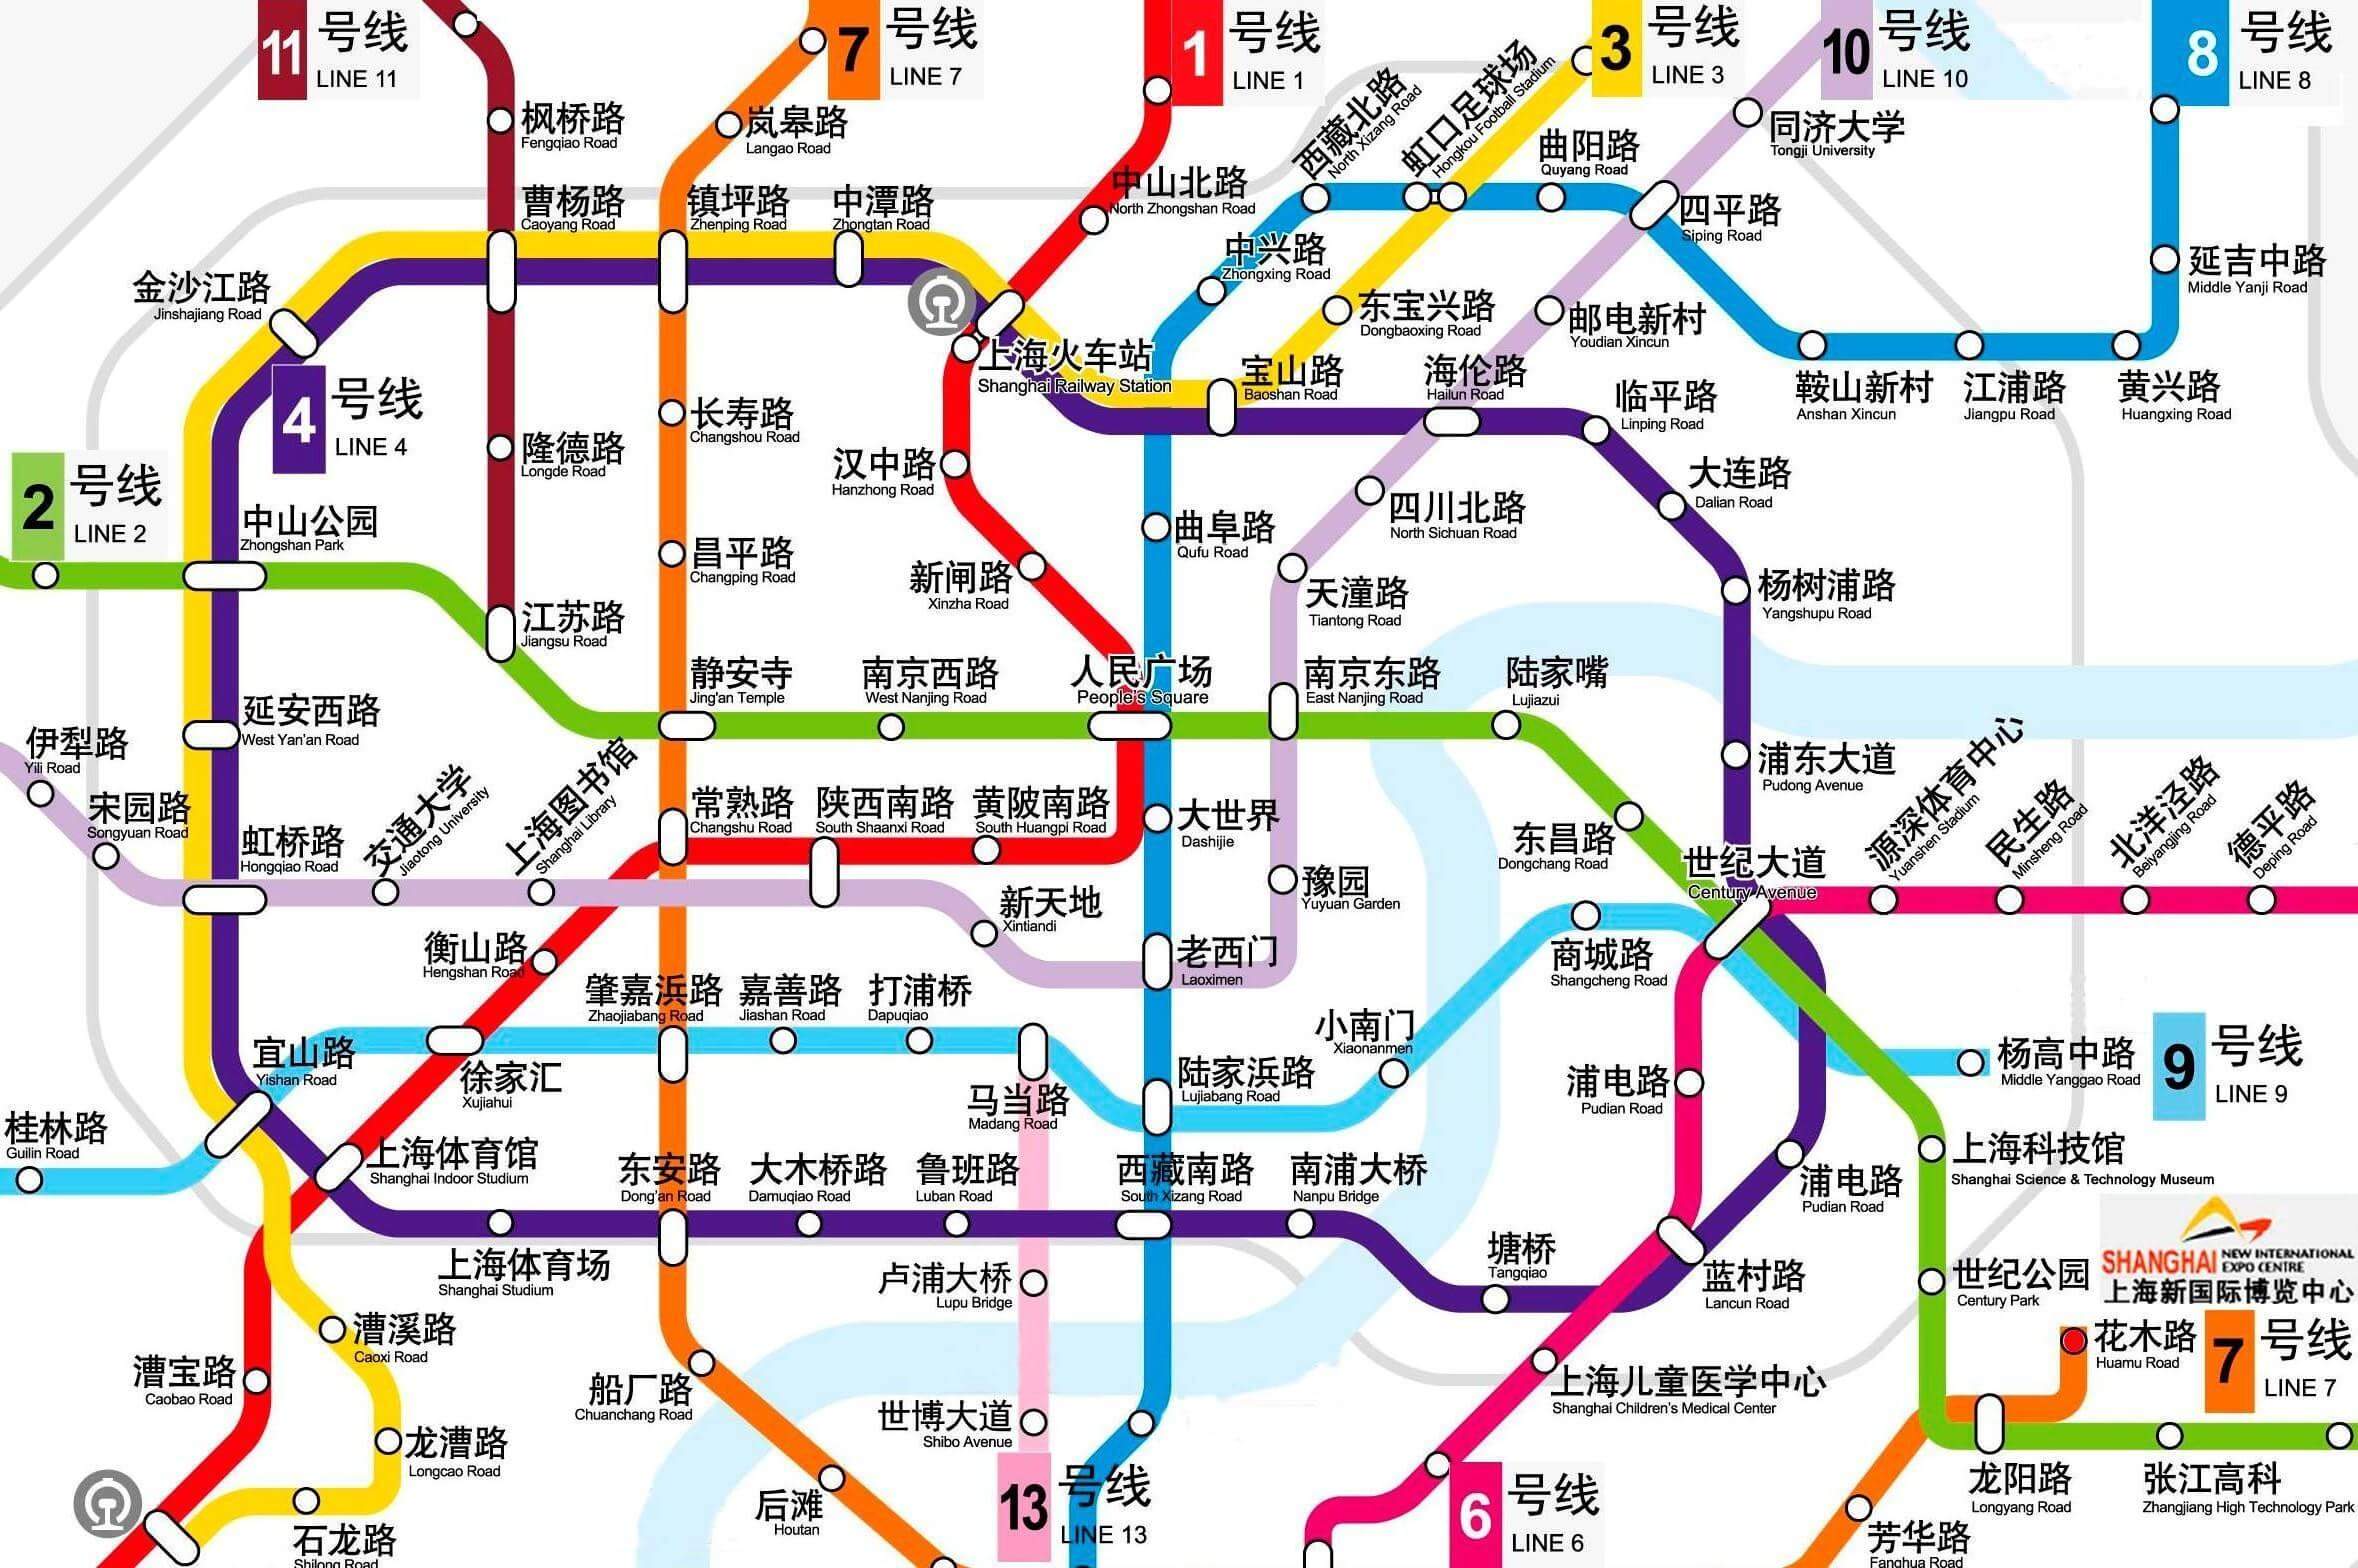 上海地铁线路图_运营时间票价站点_查询下载 - 地铁图